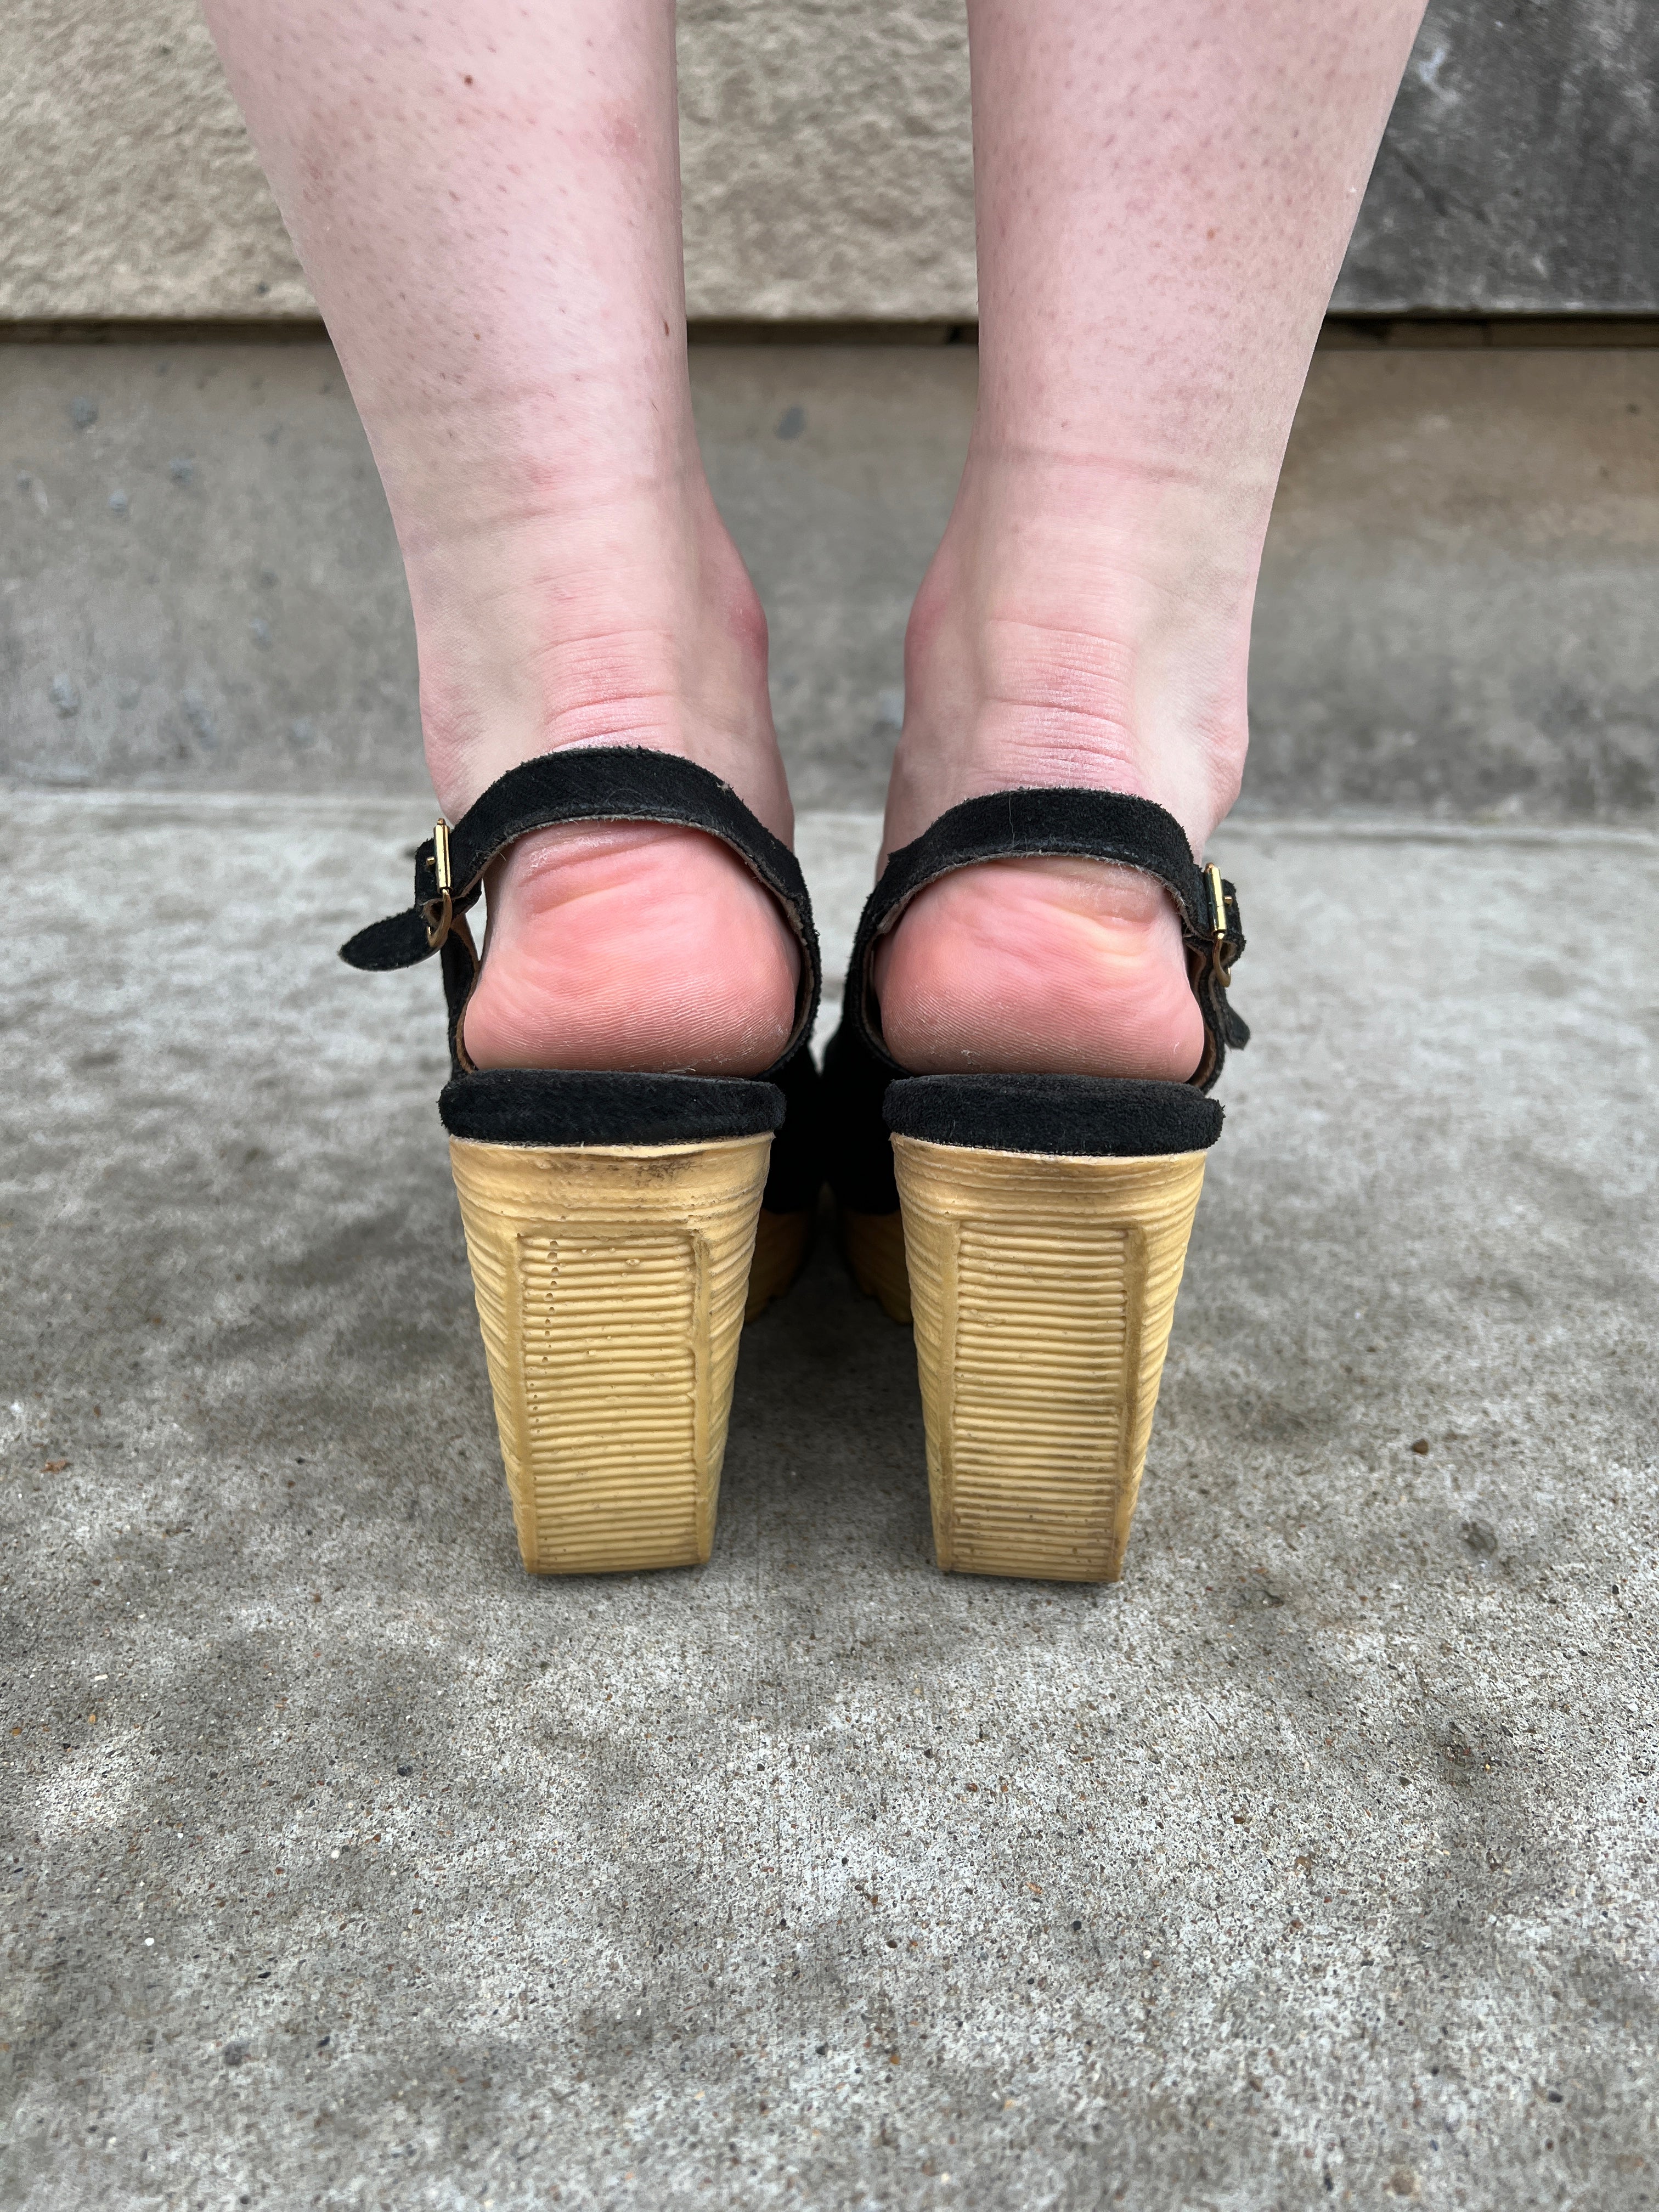 Brash Lace Up Wedge Sandals Black Size 7.5 | eBay